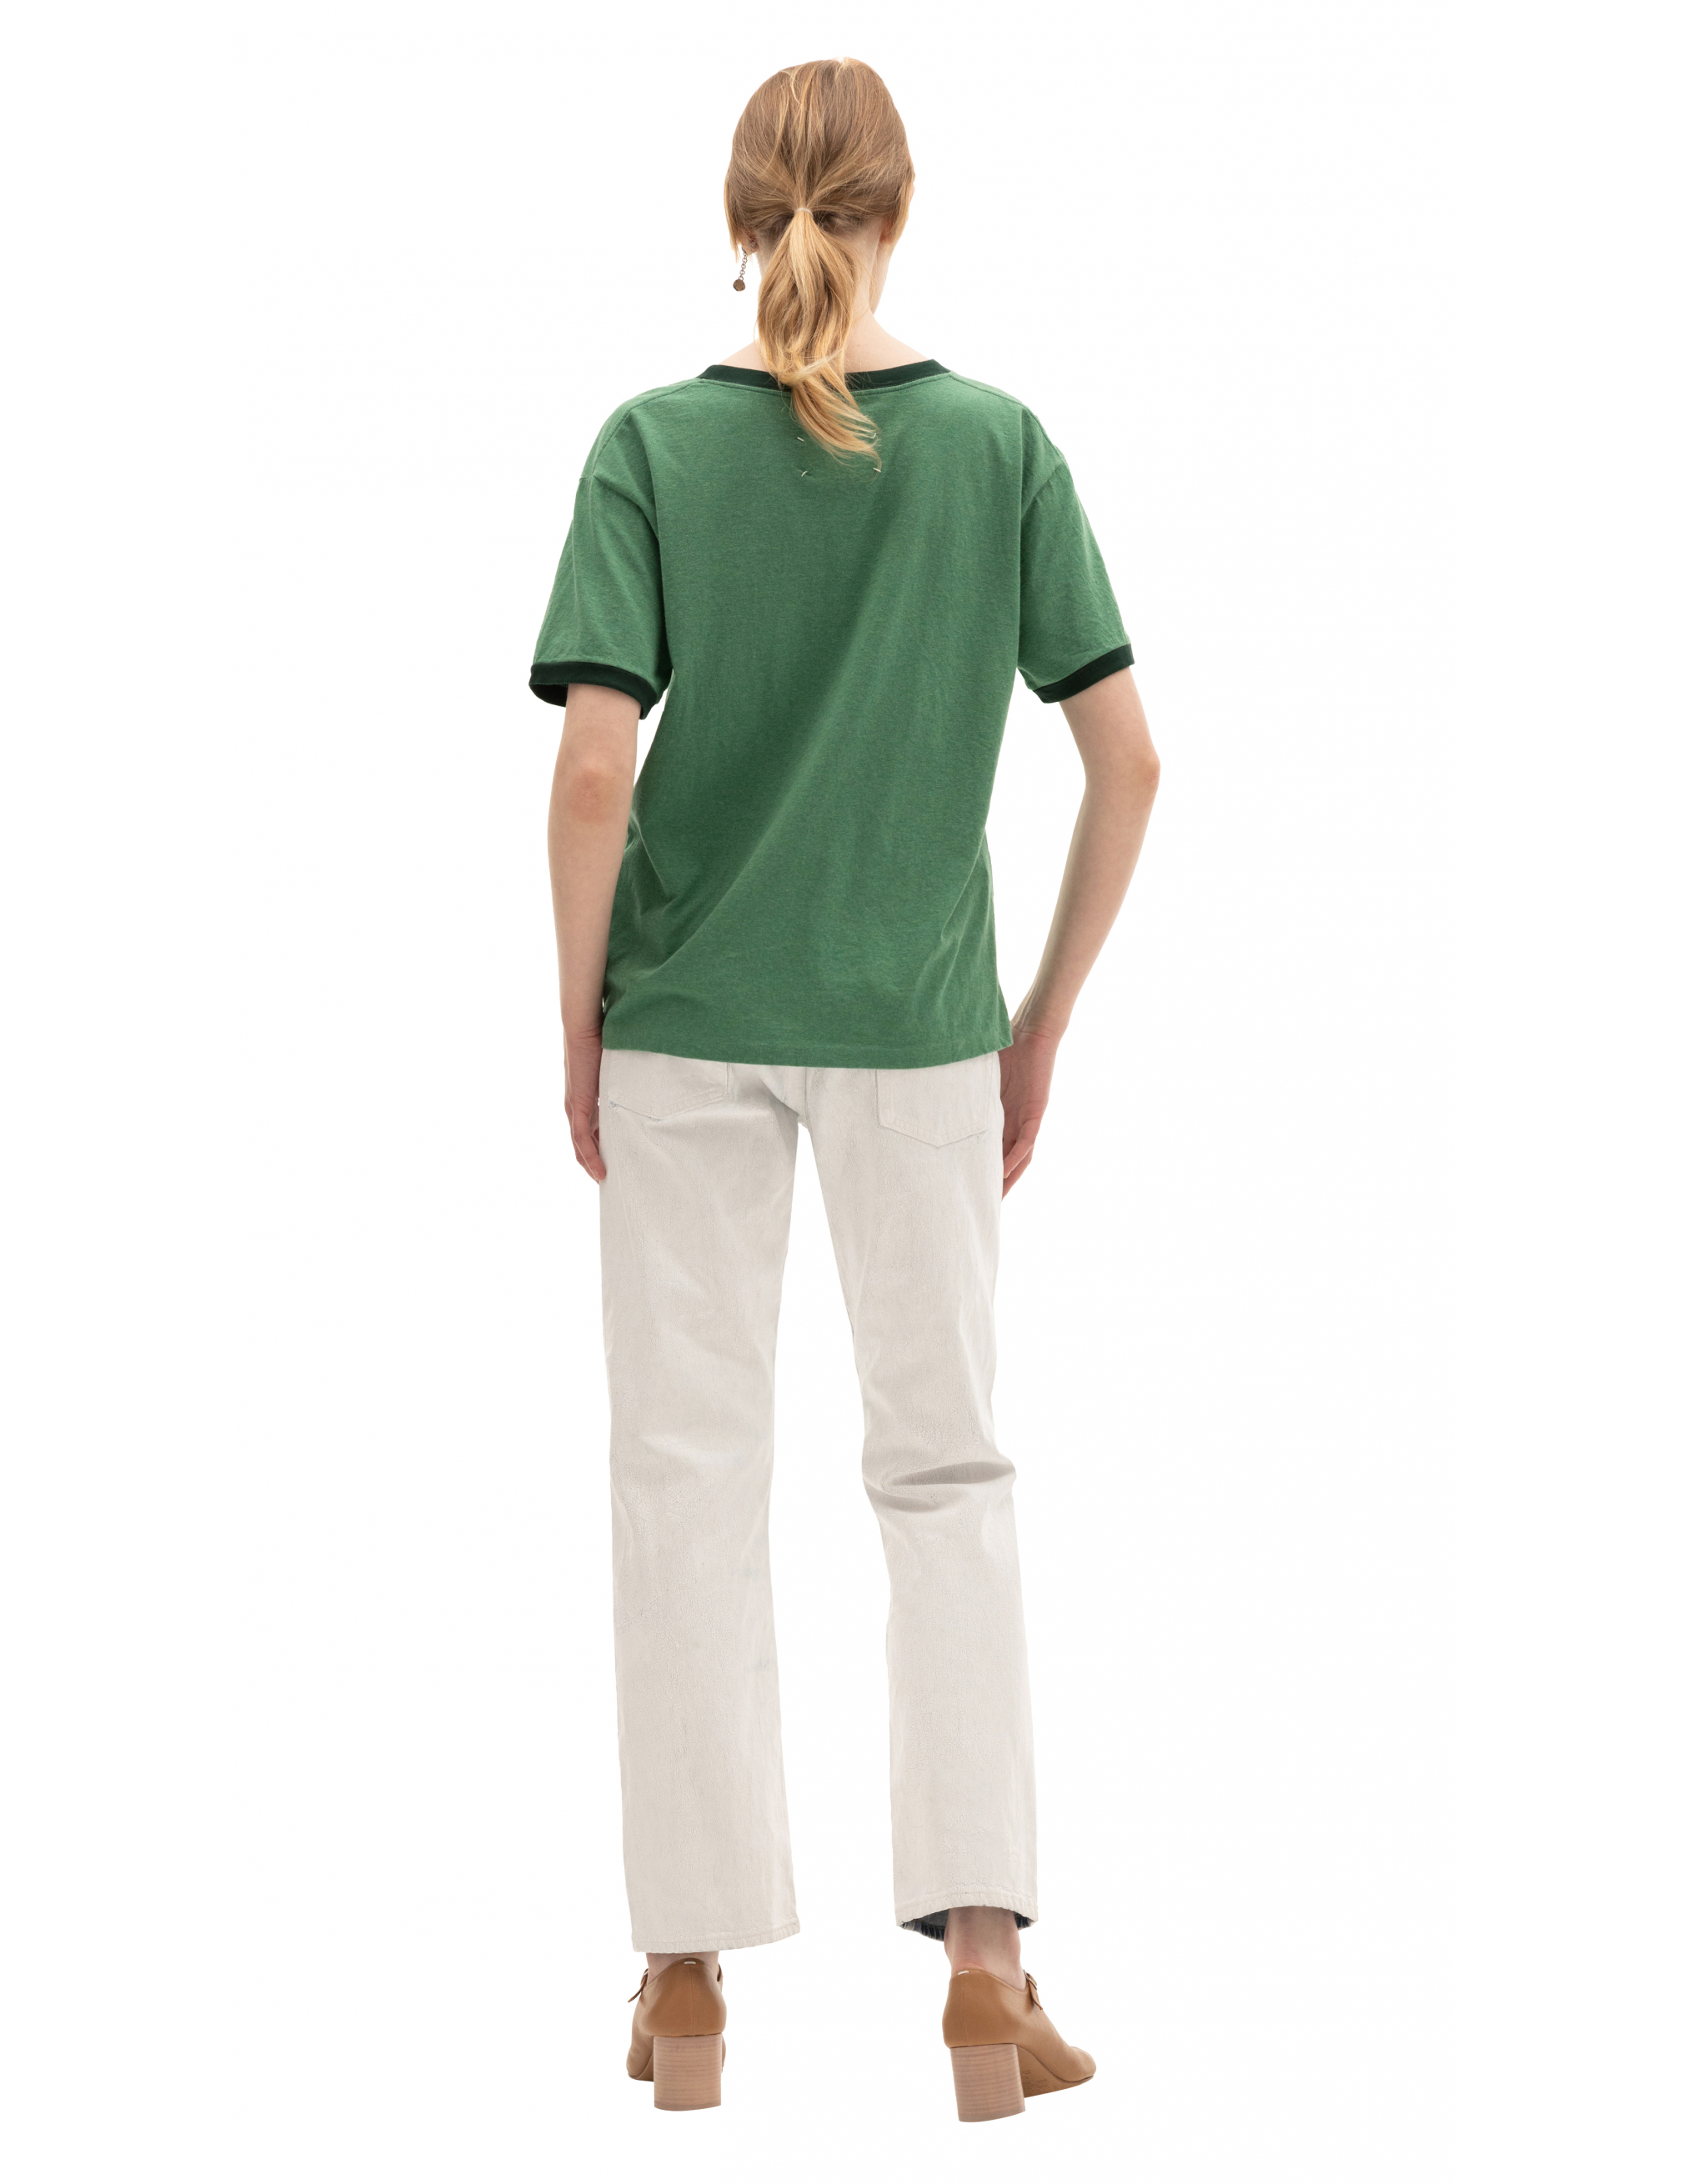 Зеленая футболка c вышивкой логотипа Maison Margiela S50GC0660/S23984/626M, размер 52;50 S50GC0660/S23984/626M - фото 3